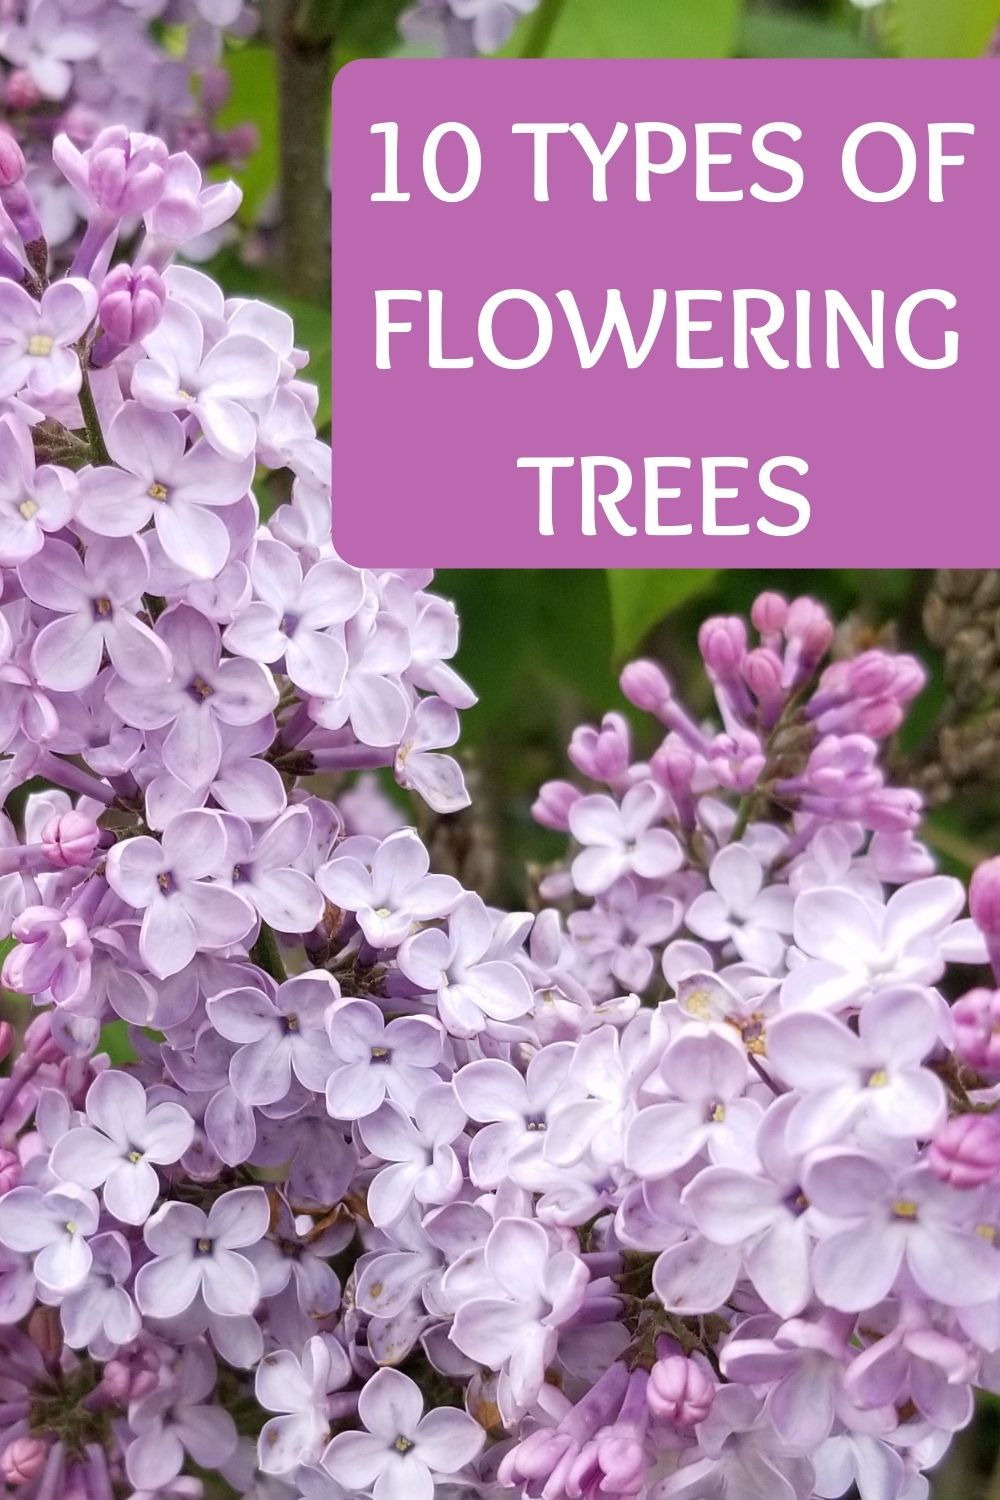 10 types of flowering trees